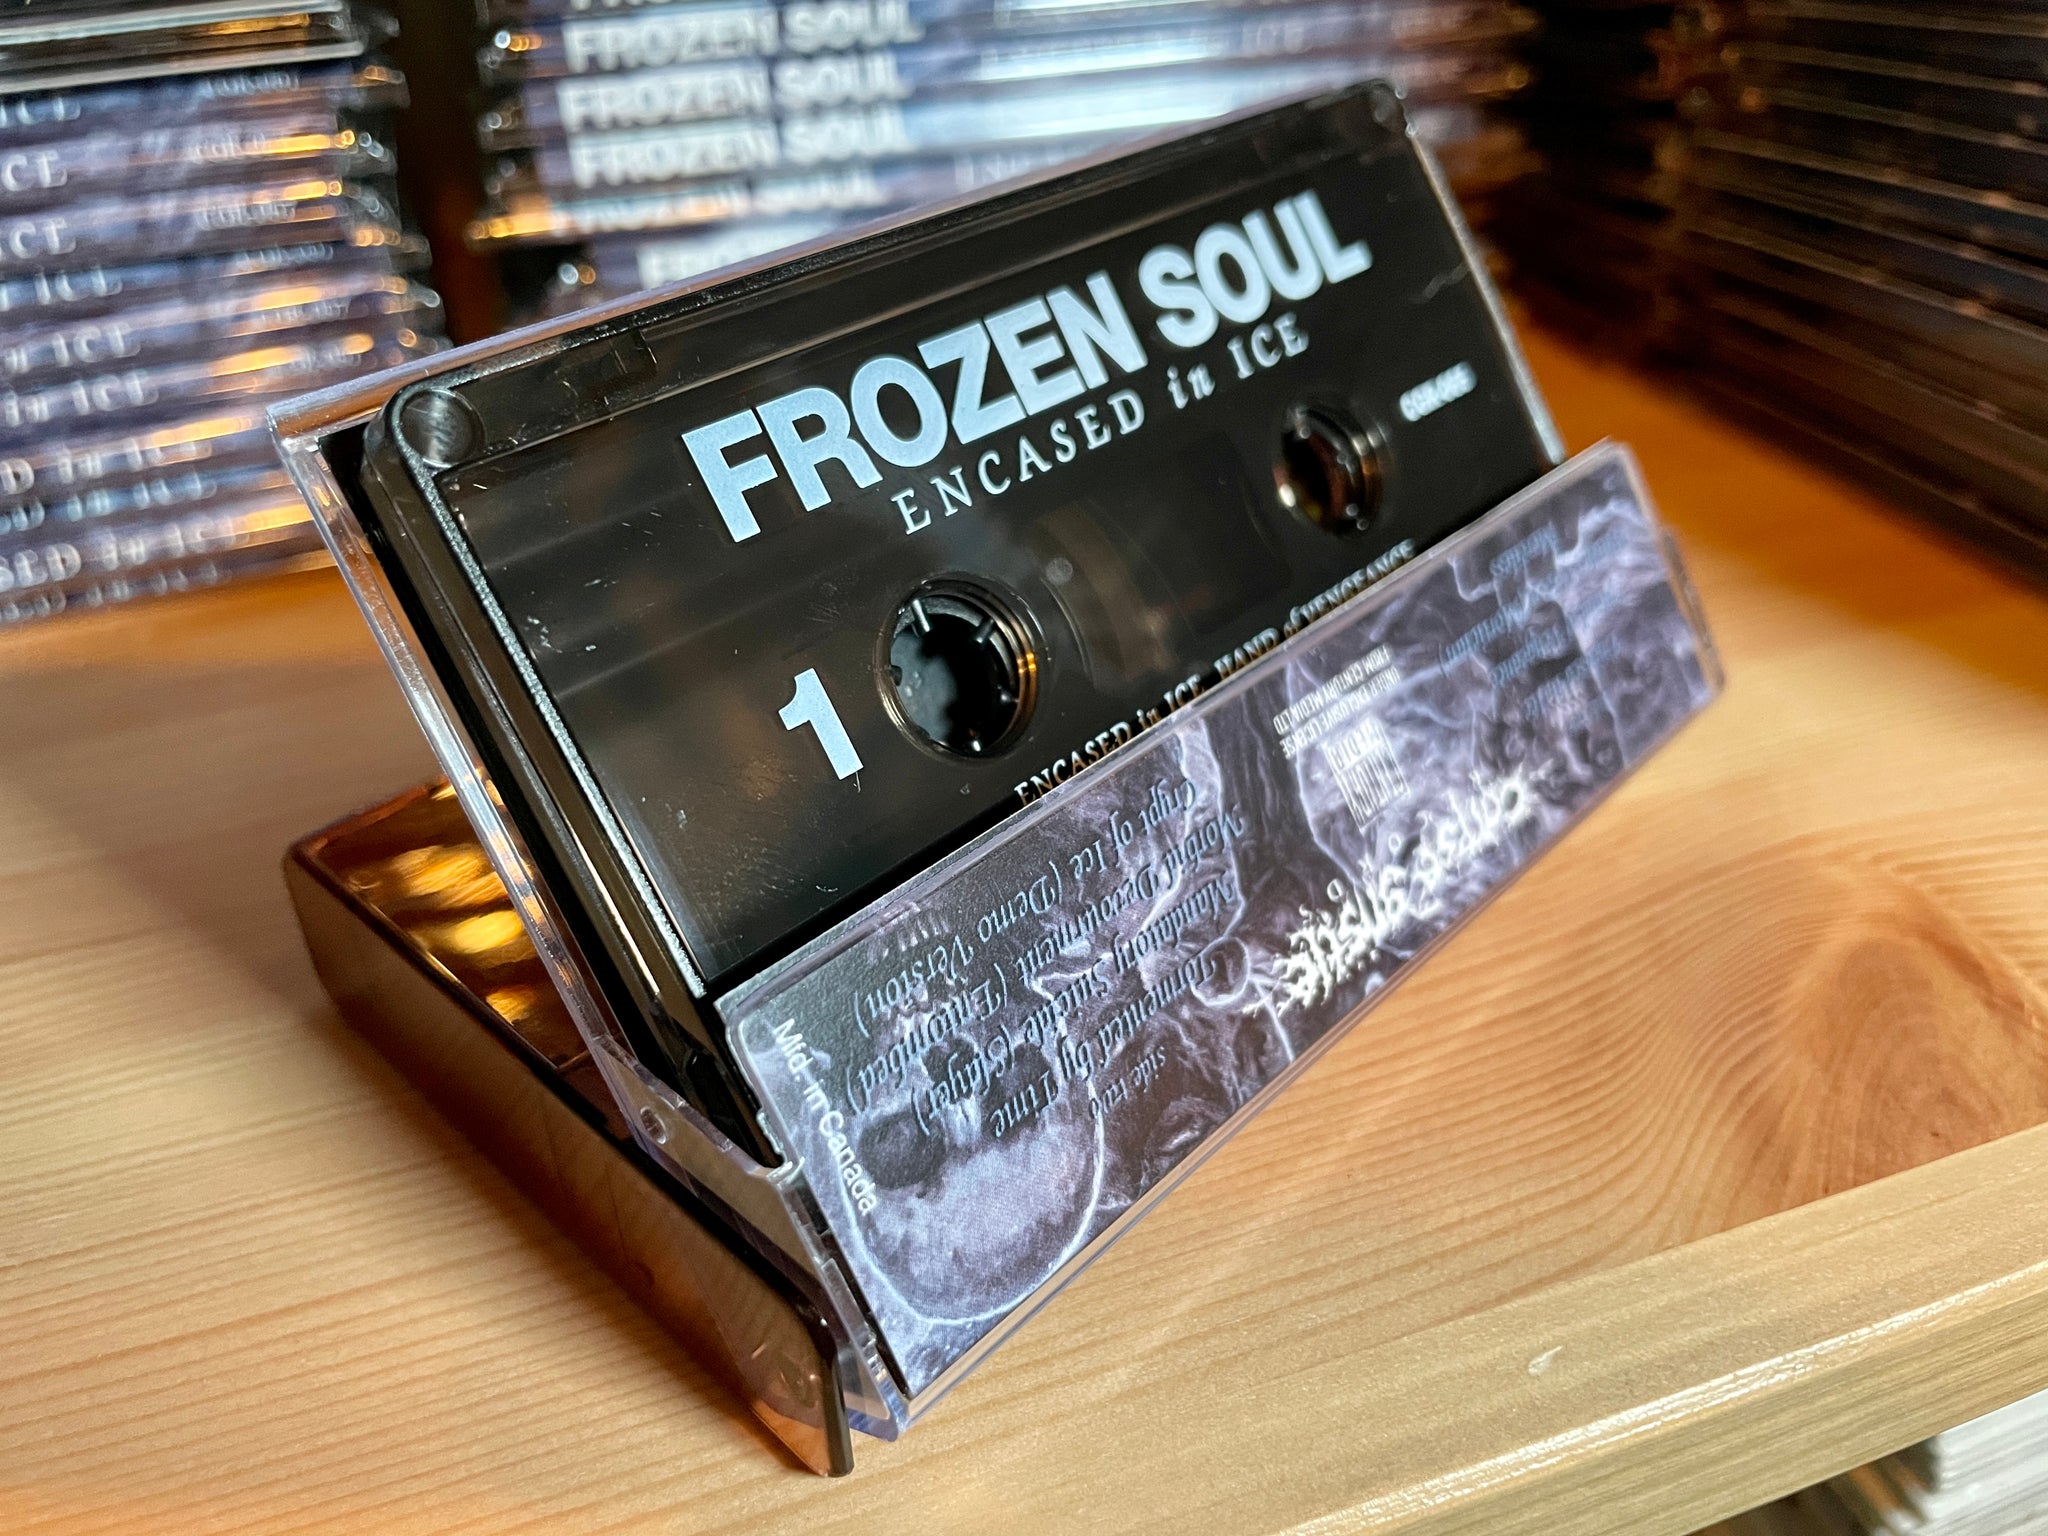 FROZEN SOUL - Encased in Ice - cassette